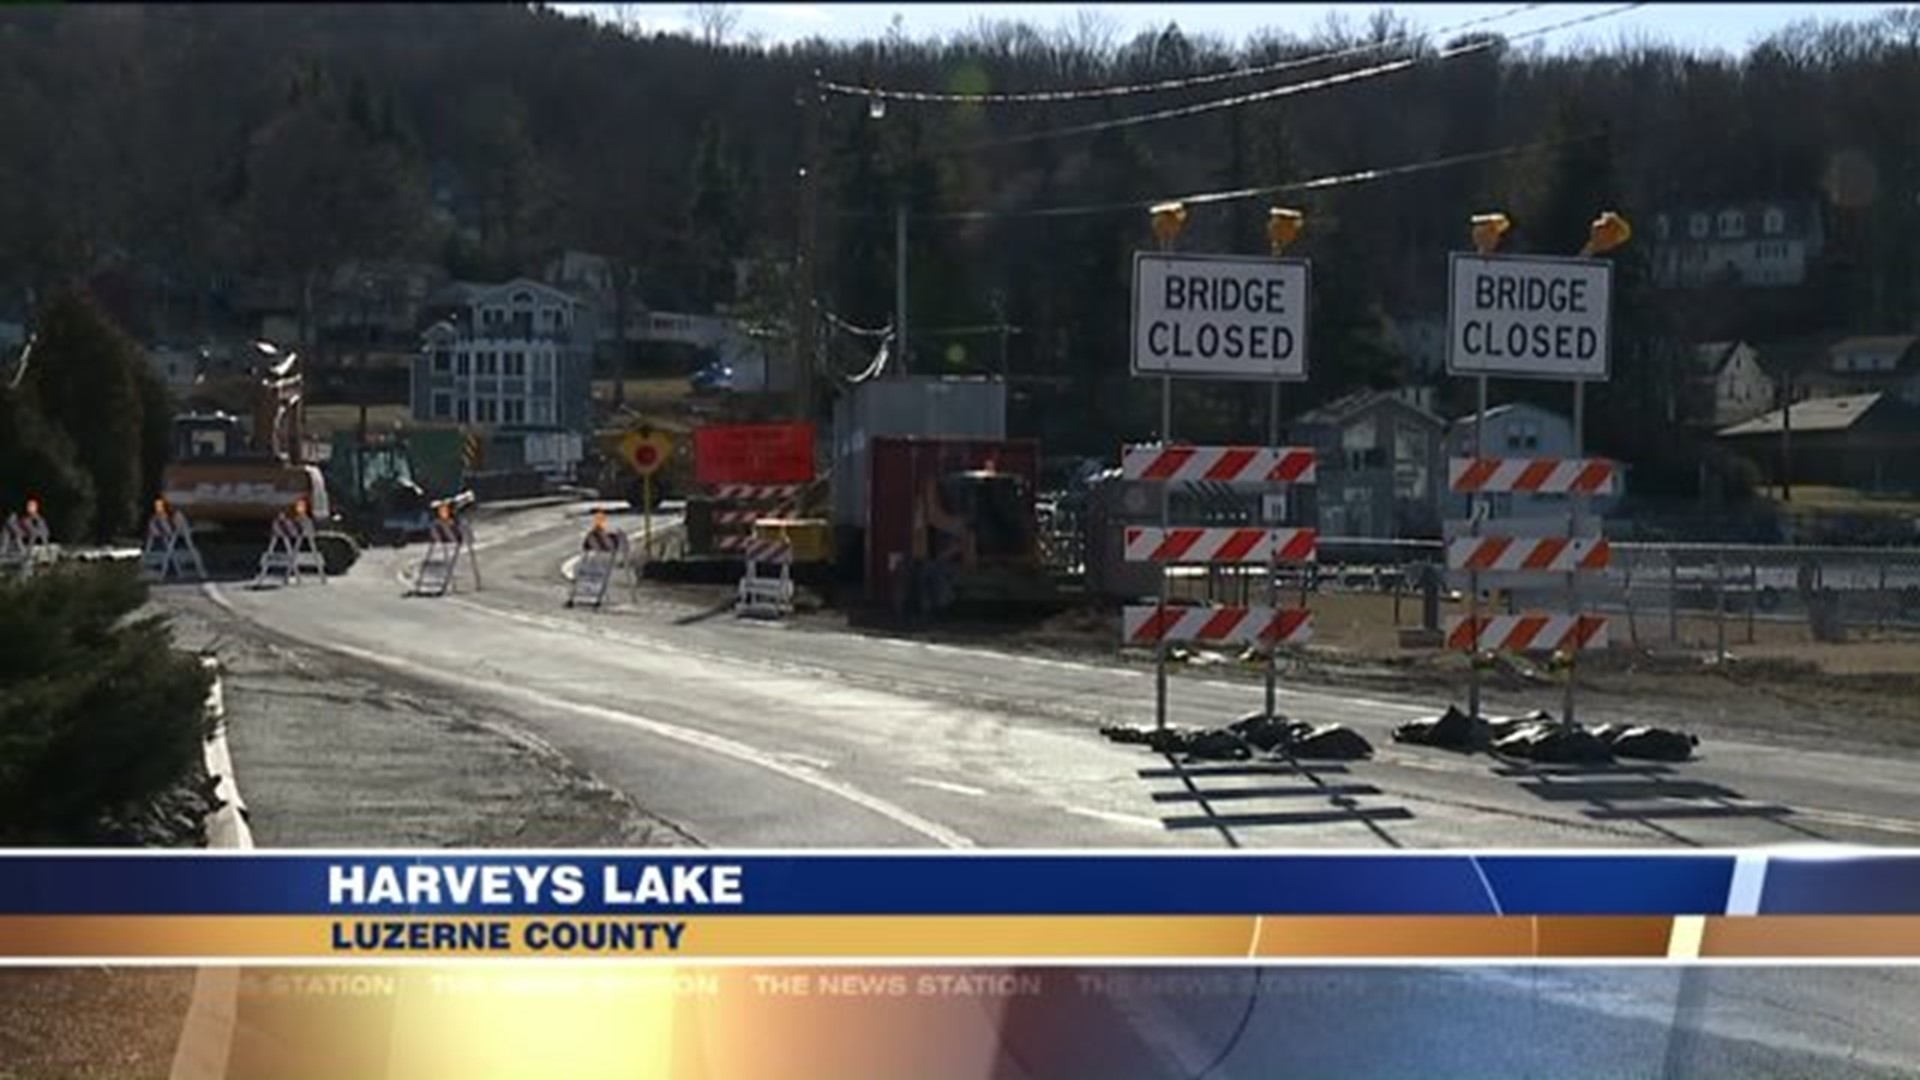 Harveys Lake Bridge Closed for Repairs, Detour in Effect